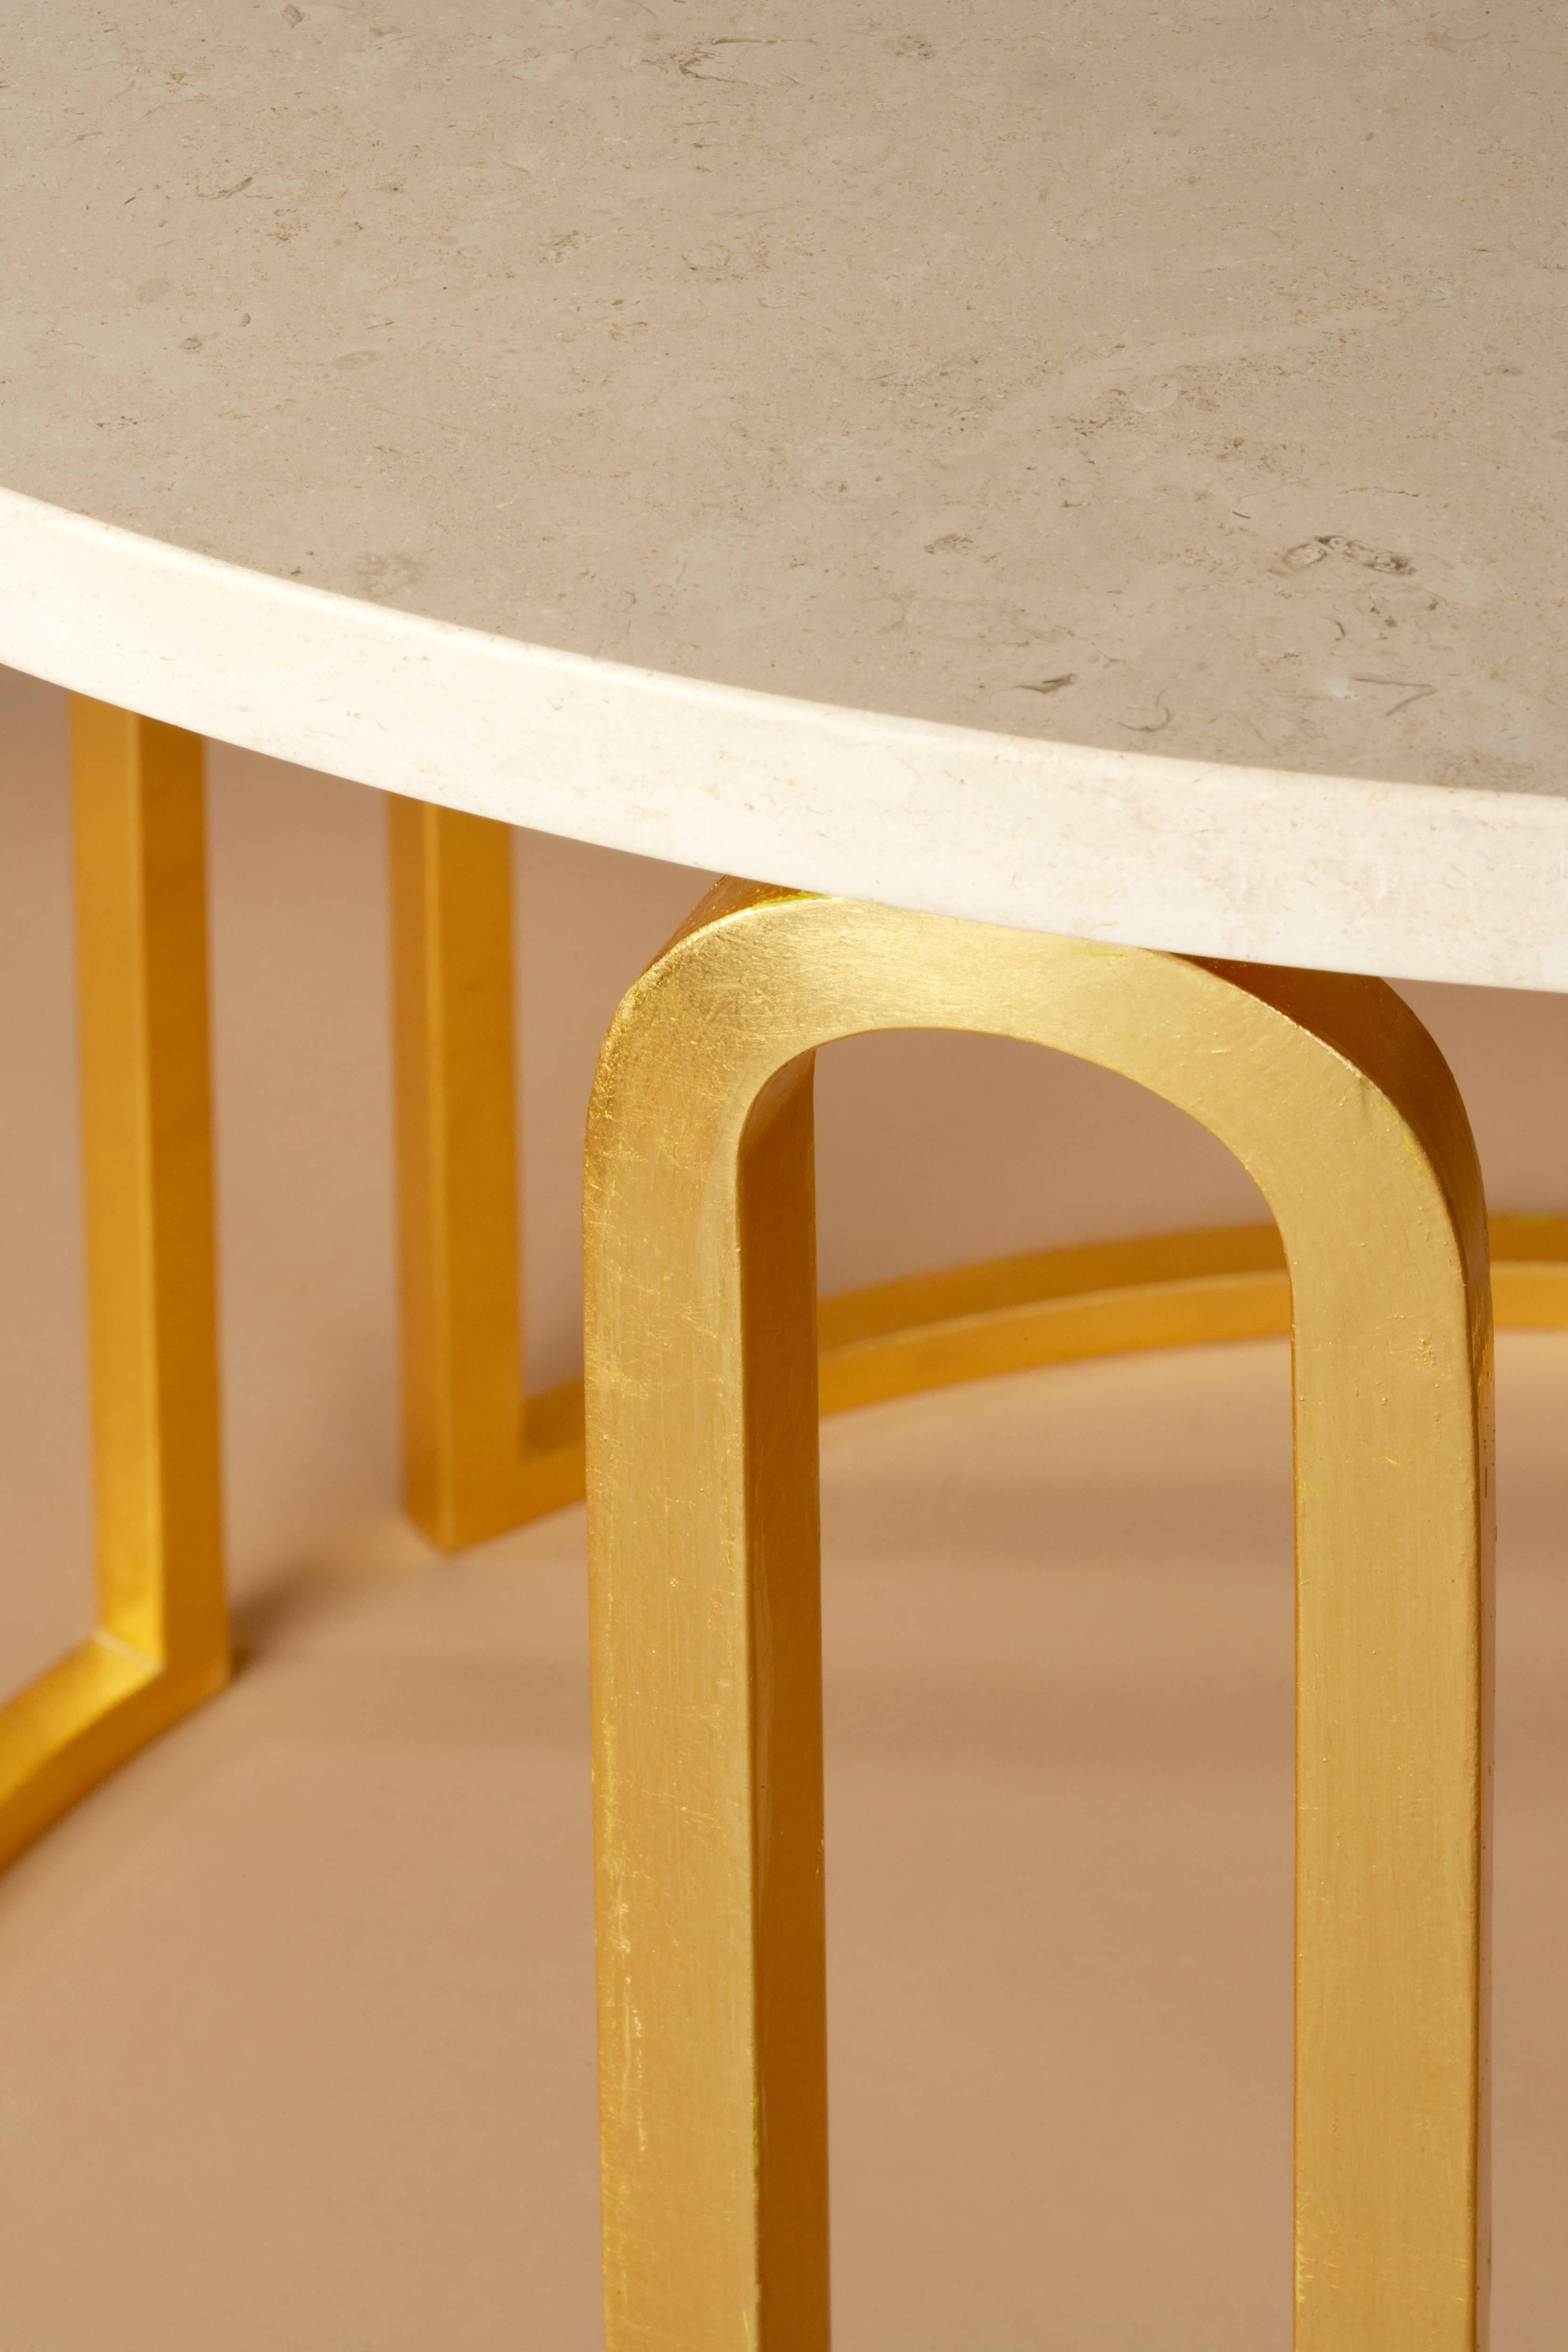 La surface lisse et soyeuse en travertin de Rhodes est soutenue par une base recouverte de feuilles d'or 24 carats, qui est forgée en trois arcs parfaitement proportionnés à partir d'une seule pièce d'acier. Cette table exquise est un parfait